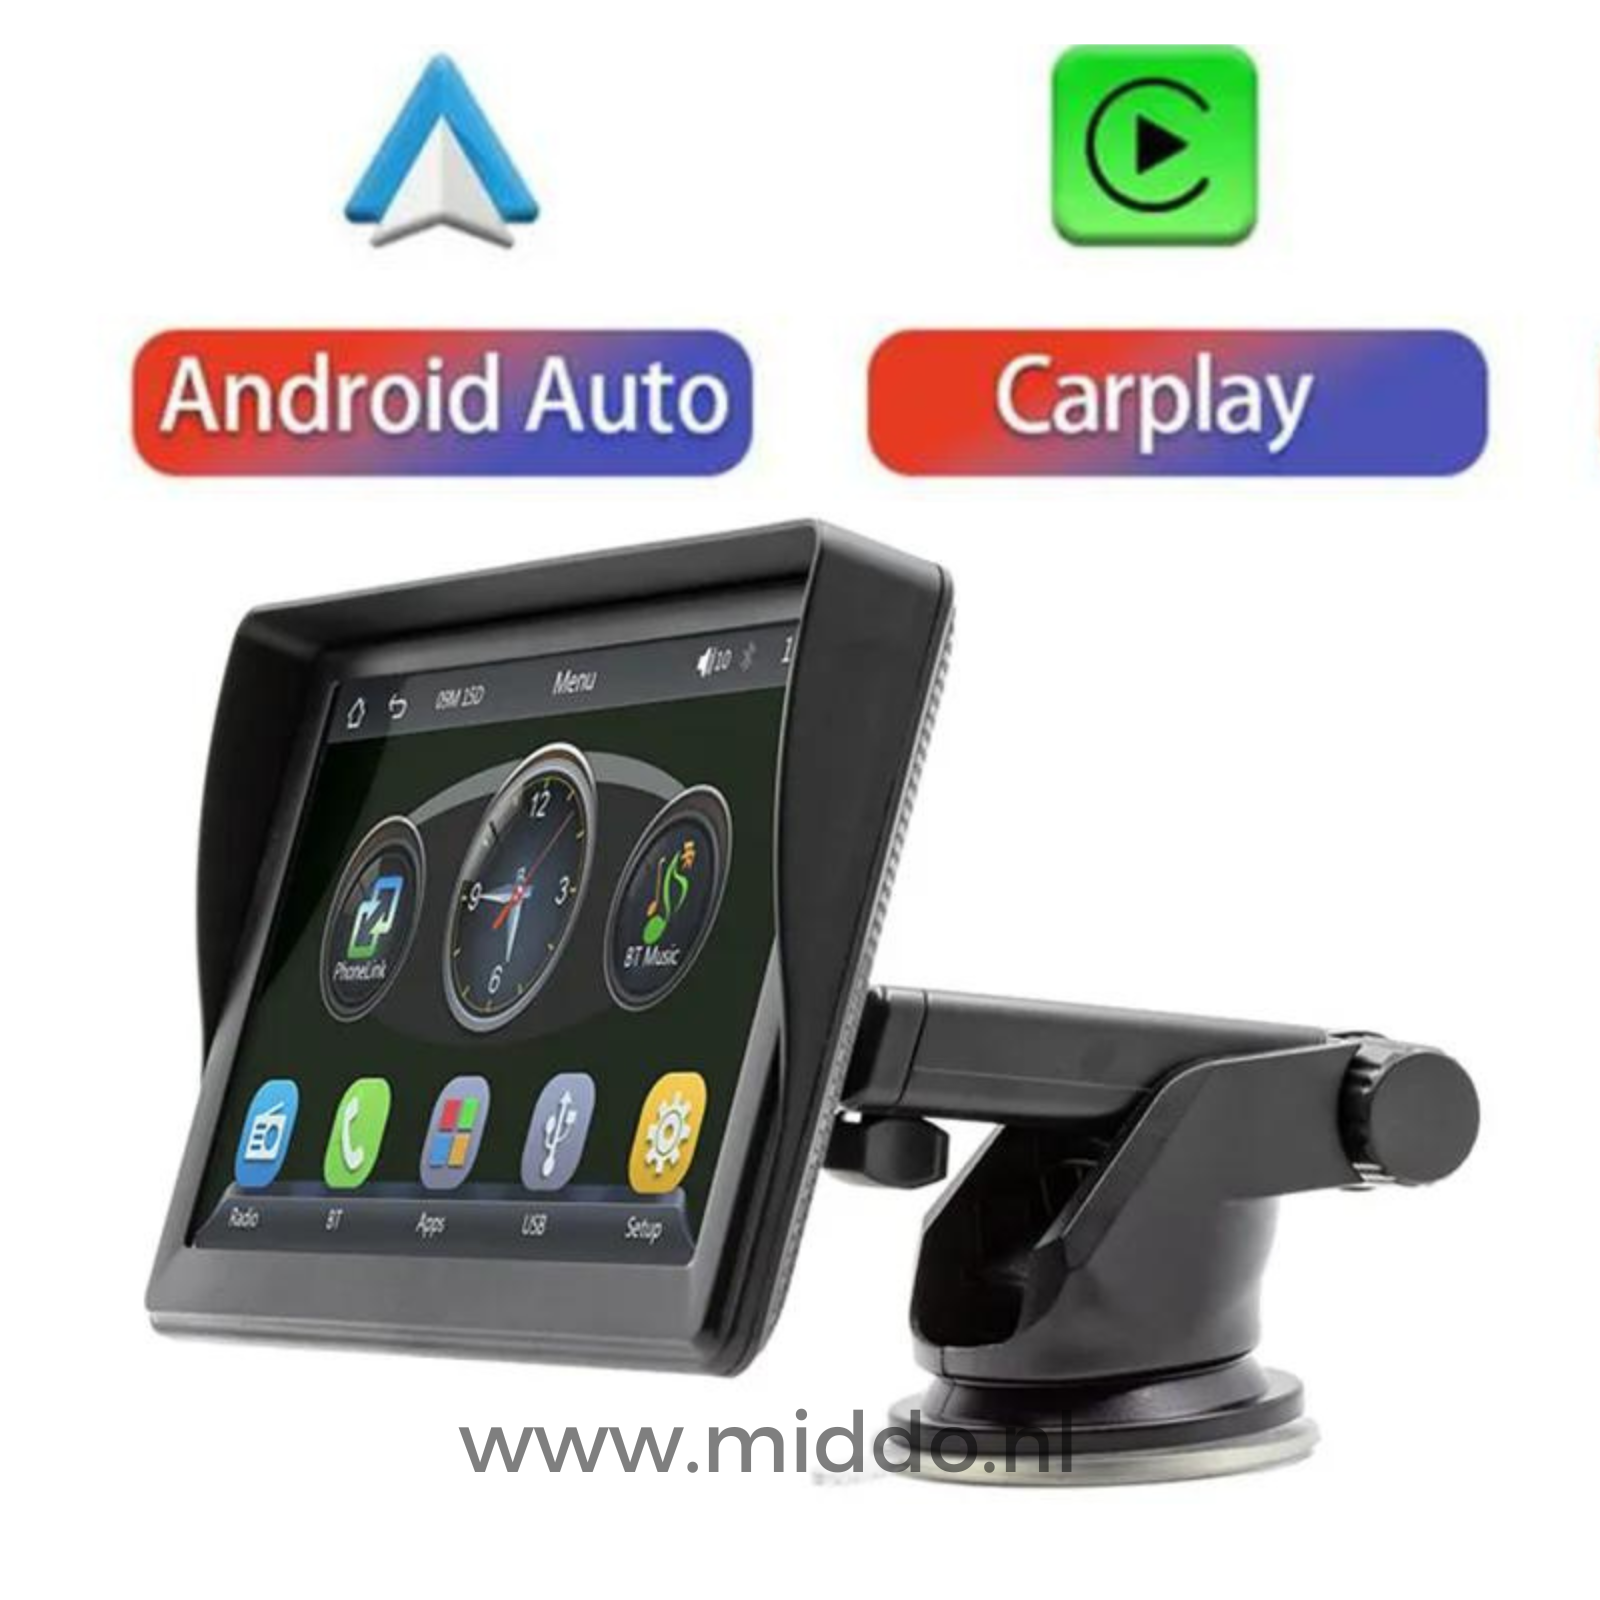 Foto van Carplay met Android  en Carplay teken er boven op een witte achtergrond.